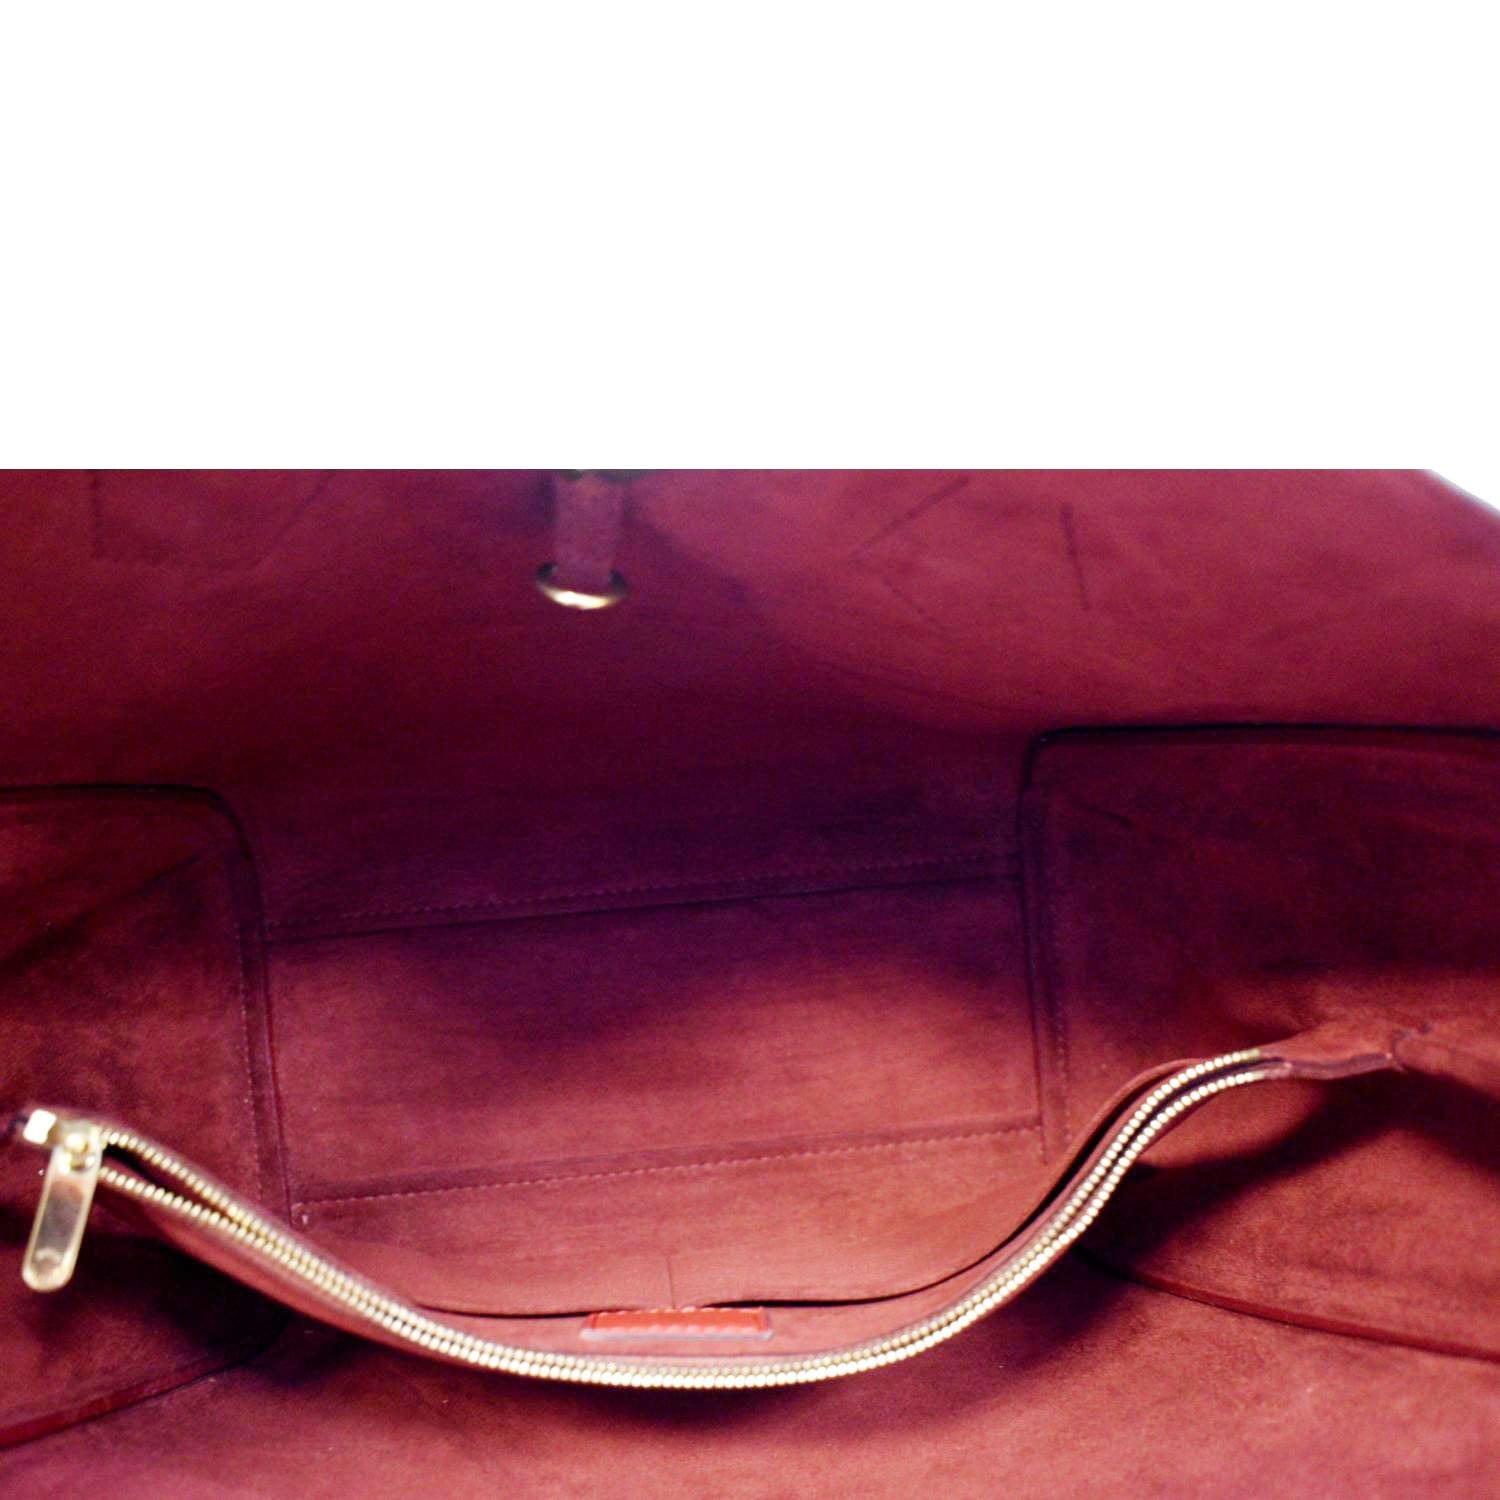 XXSLOUISVUITTON KIMONO Women Shopping Package MICHAEL 96 KOR  Shoulder Bag Clutch Handbag WALLET M40459 Totes From Honghuo201988, $24.32